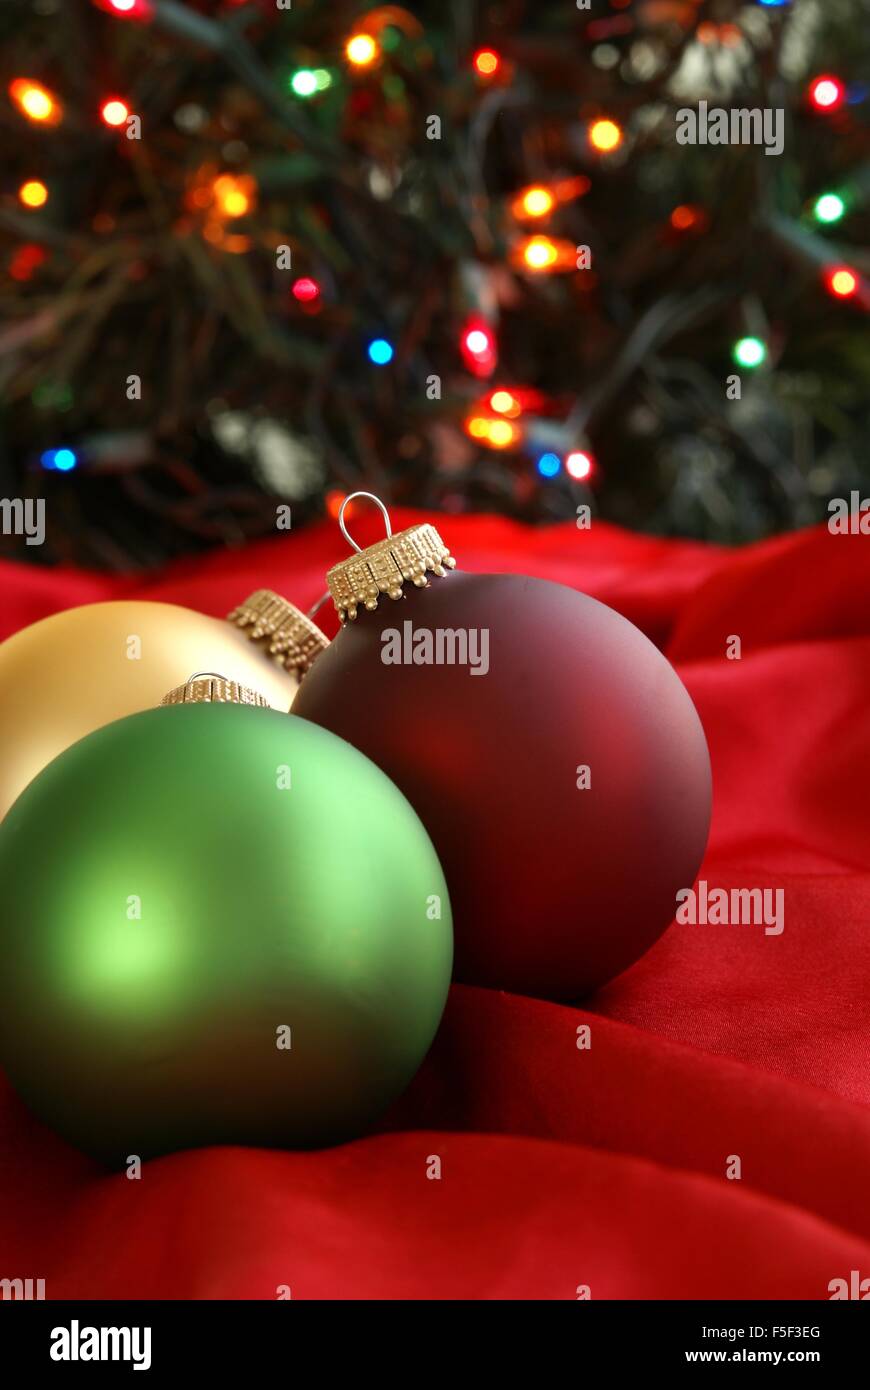 Albero Di Natale Rosso E Verde.Addobbi Natale Di Rosso Verde E Oro Annidato In Seta Tessuto Rosso Con Albero Di Natale In Background Foto Stock Alamy